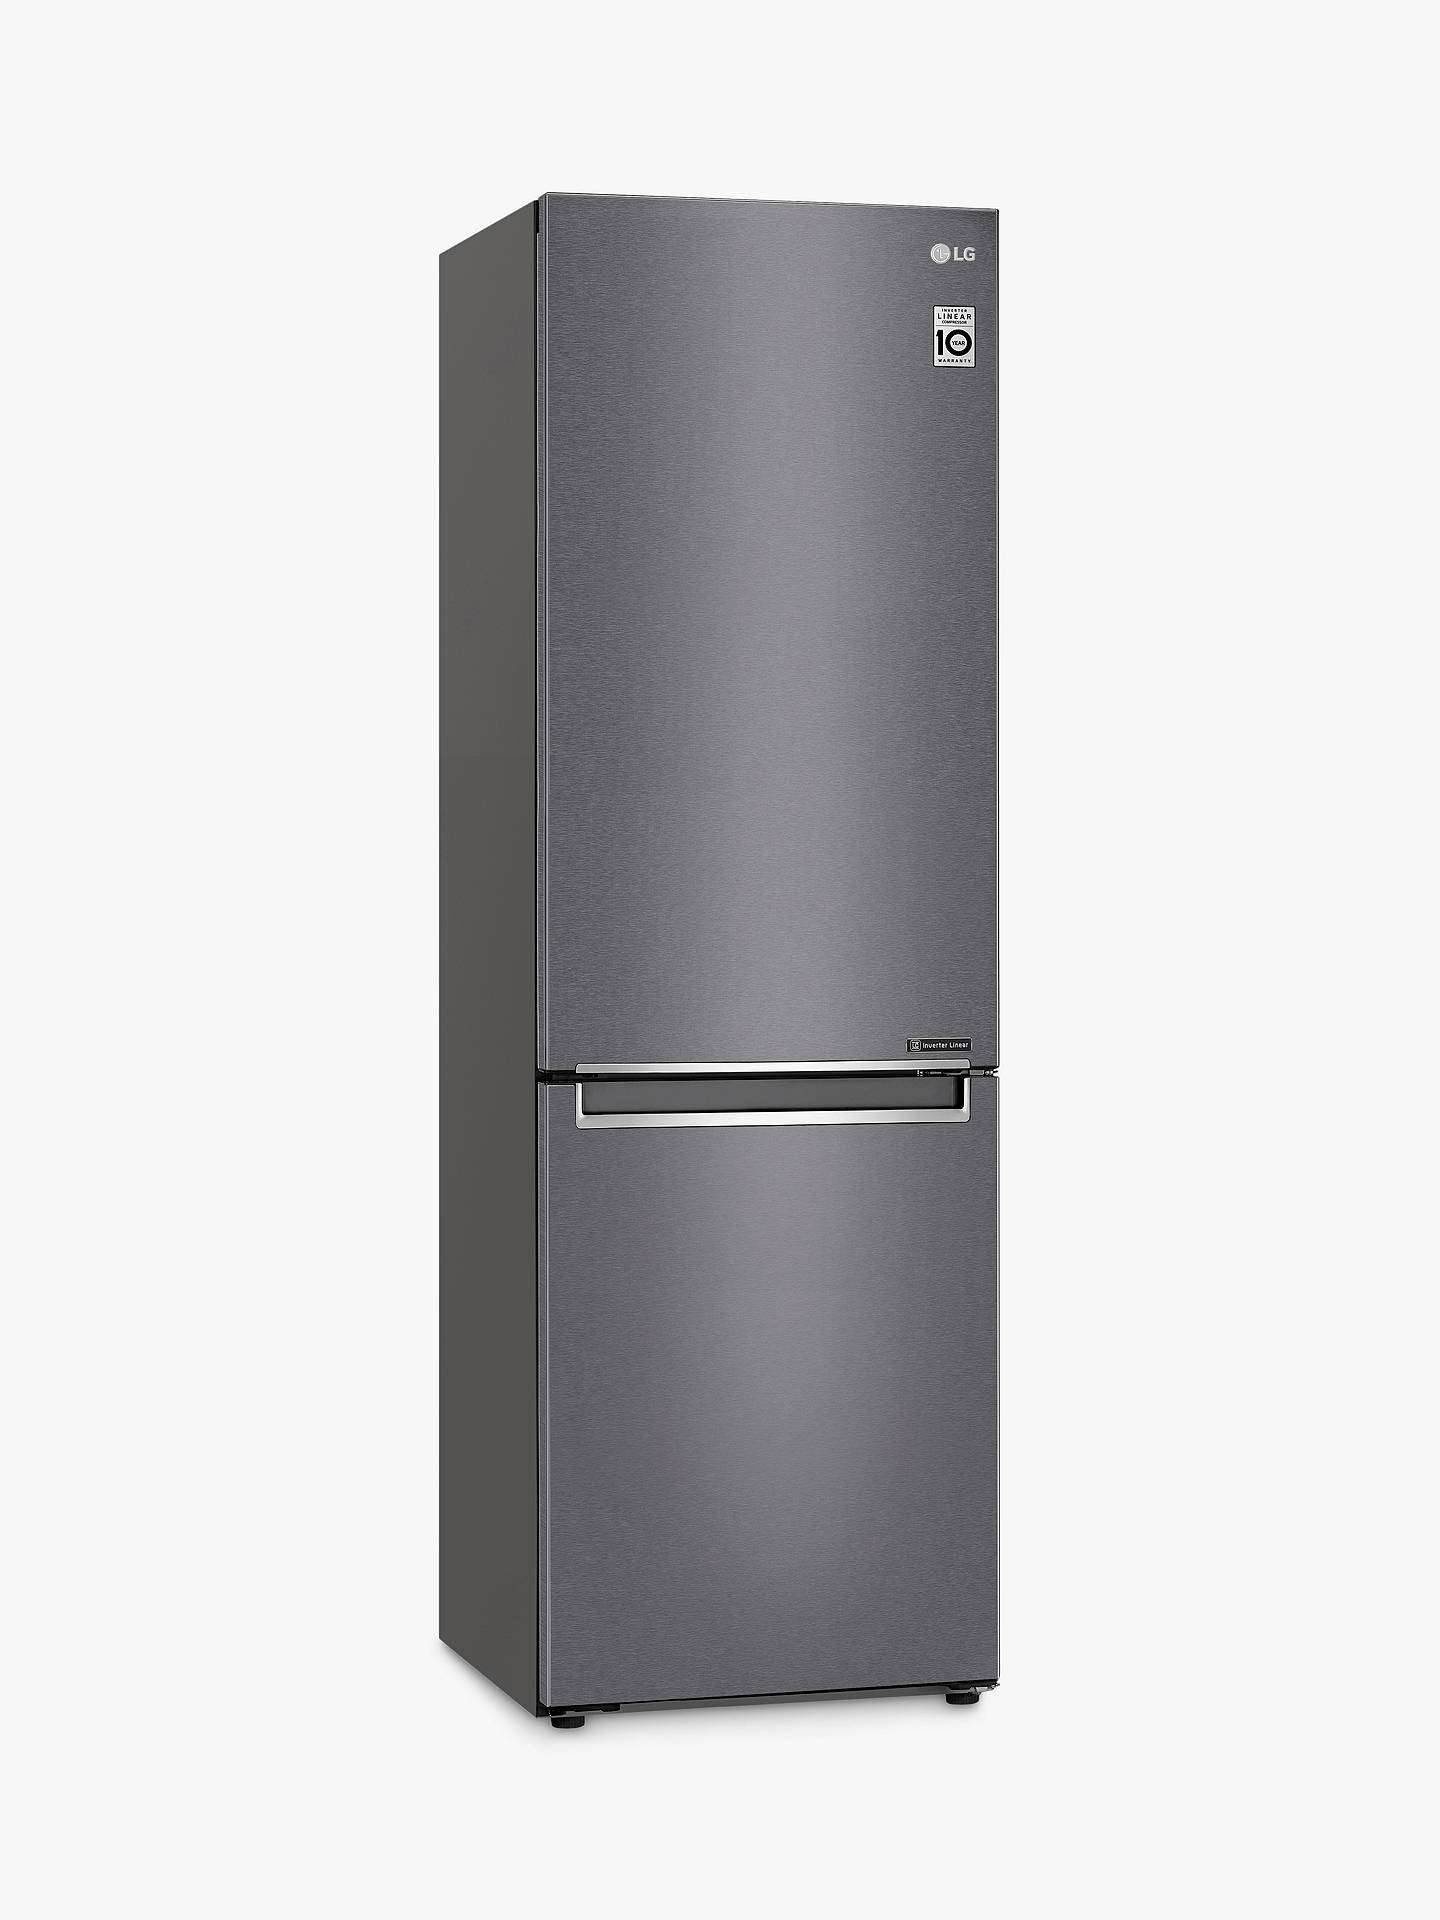 Двухкамерный холодильник lg no frost. Холодильник LG ga-b459slkl. Холодильник LG DOORCOOLING+ ga-b459 slkl. Холодильник LG DOORCOOLING ga-b509sekl. LG DOORCOOLING+ ga-b459cqwl.